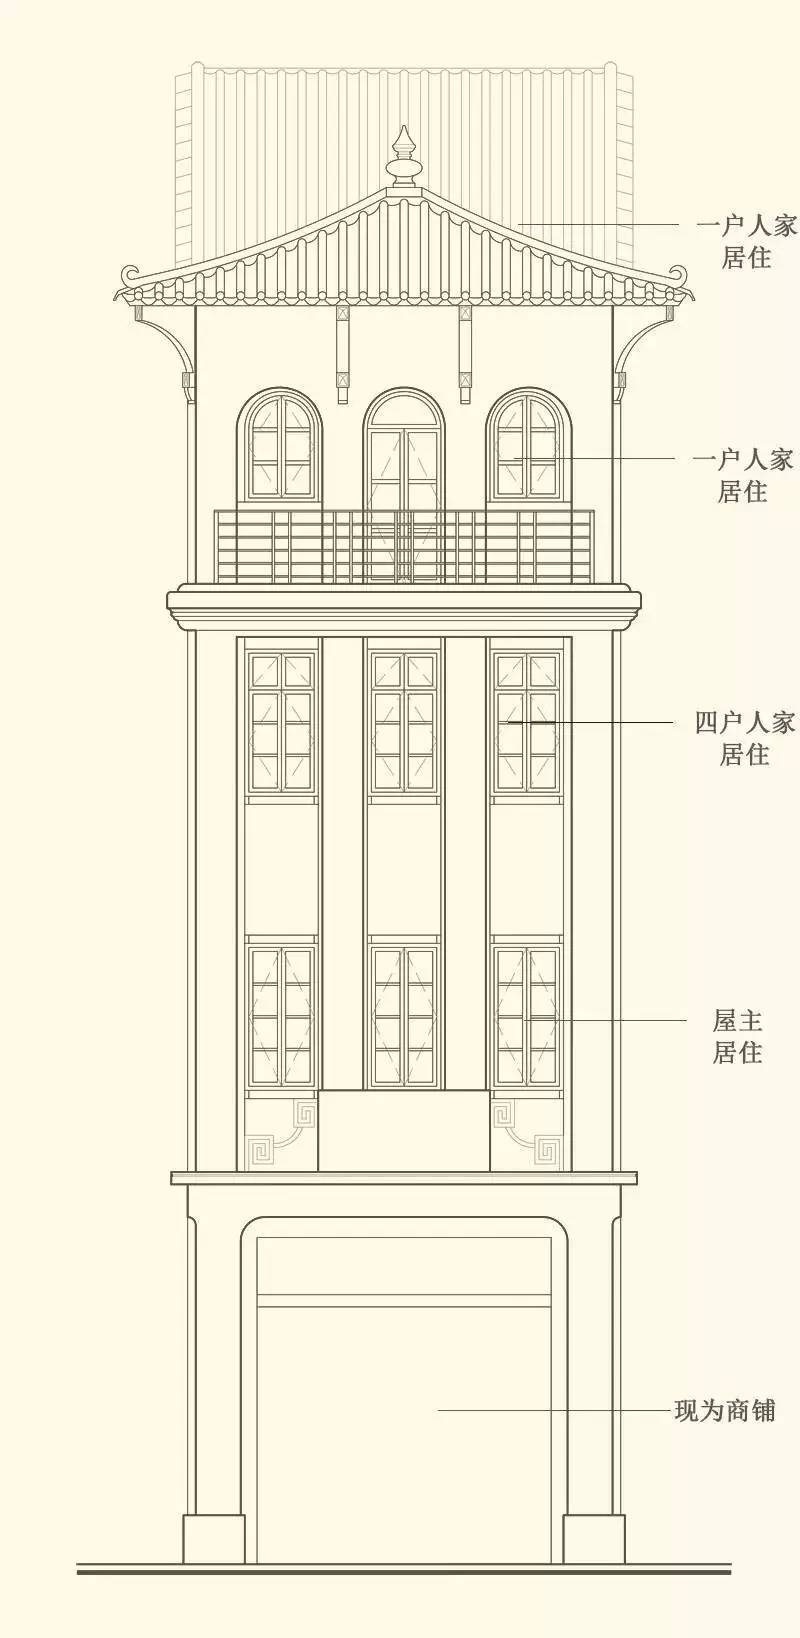 它是全广州最优雅的百年老楼,传闻一夜之间红砖变黄墙!